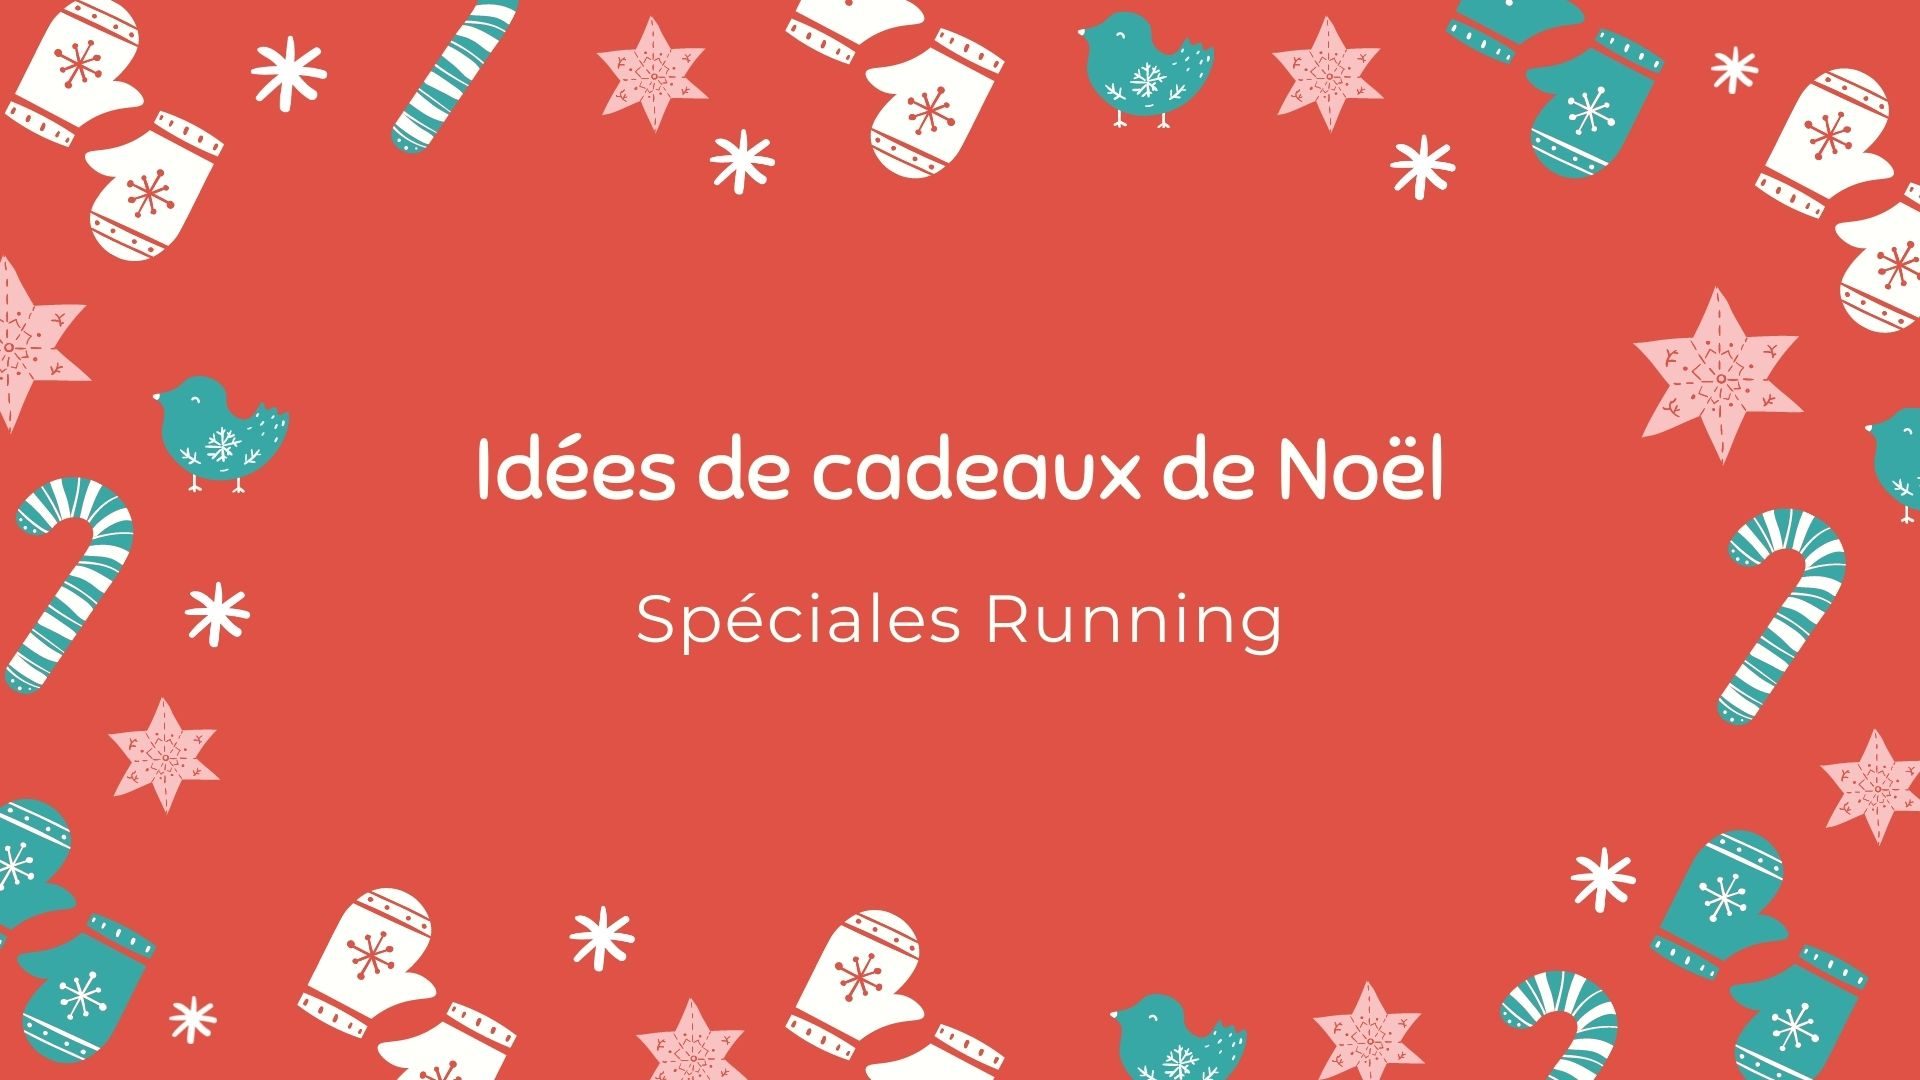 90 Idées Cadeaux de Noël Spéciales : Running et Trail pour tous les budgets